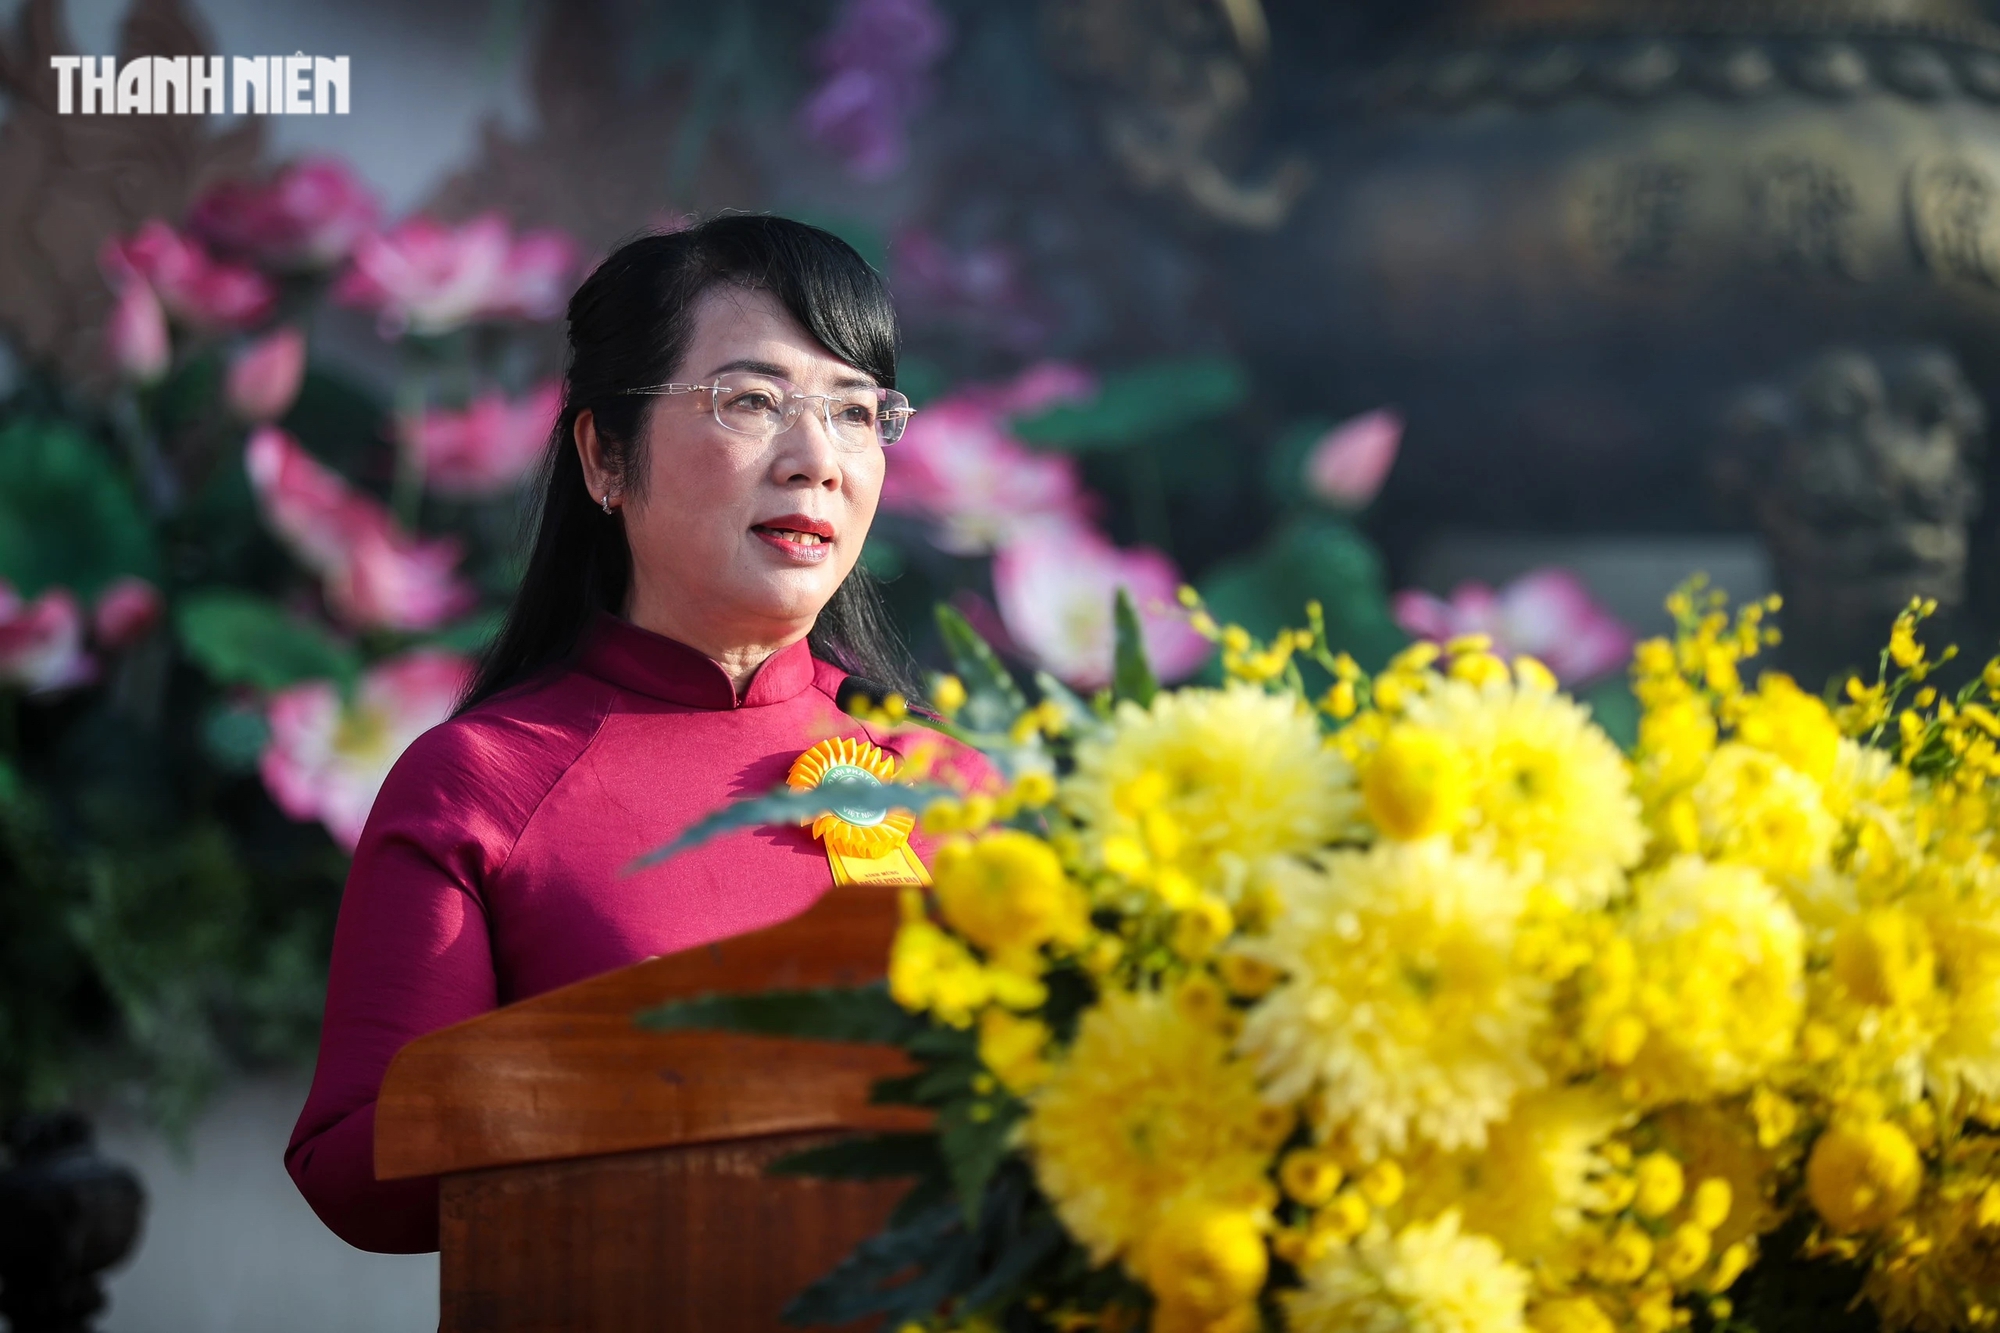 Bà Trần Kim Yến, Chủ tịch Ủy ban MTTQVN TP.HCM thay mặt lãnh đạo TP.HCM gửi lời chúc mừng tốt đẹp đến chư tôn đức giáo phẩm cùng toàn thể tăng, ni, Phật tử.